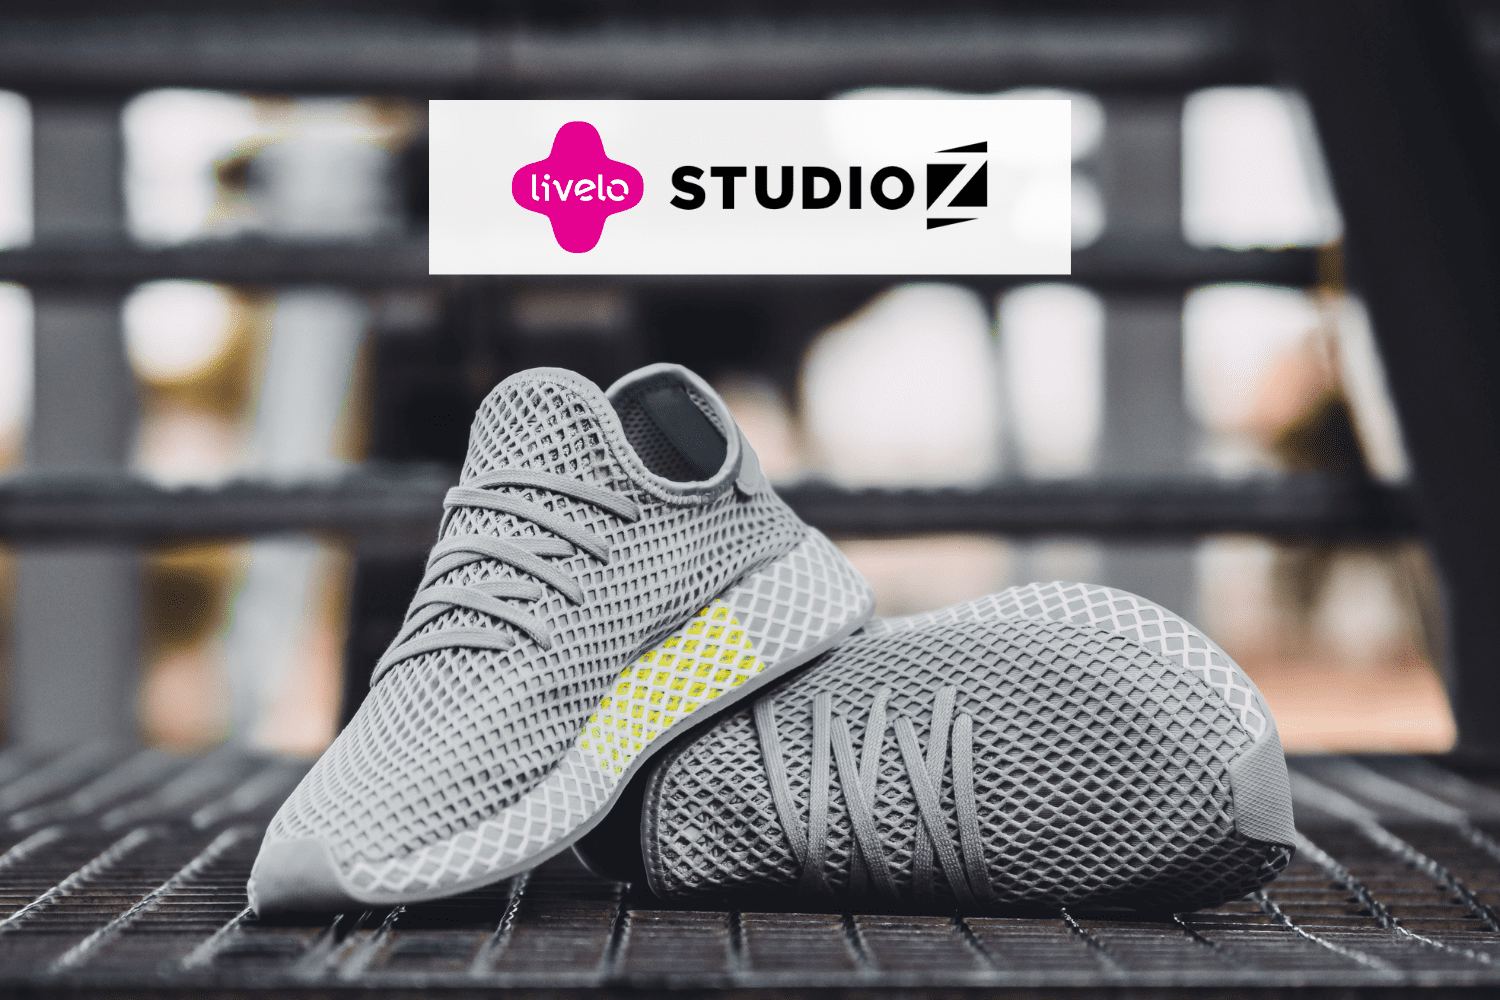 Sapatos com logo Livelo e Studio Z 8 pontos Livelo